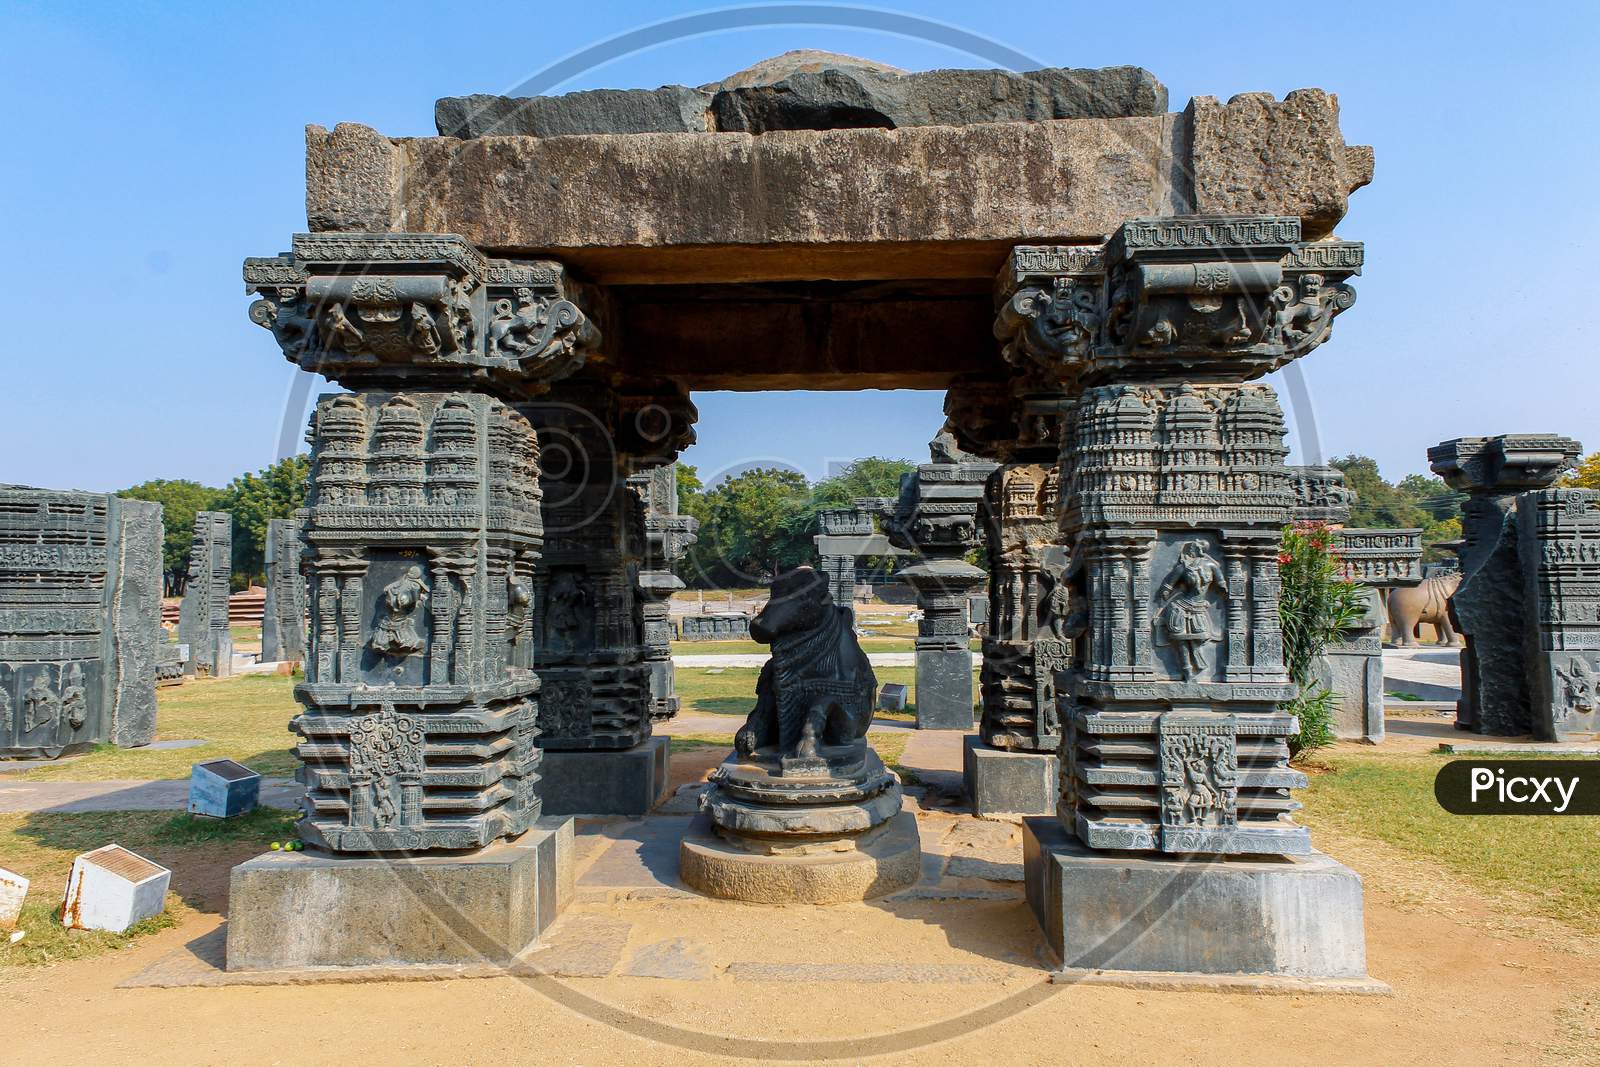 kakatiyan monuments in warangal fort